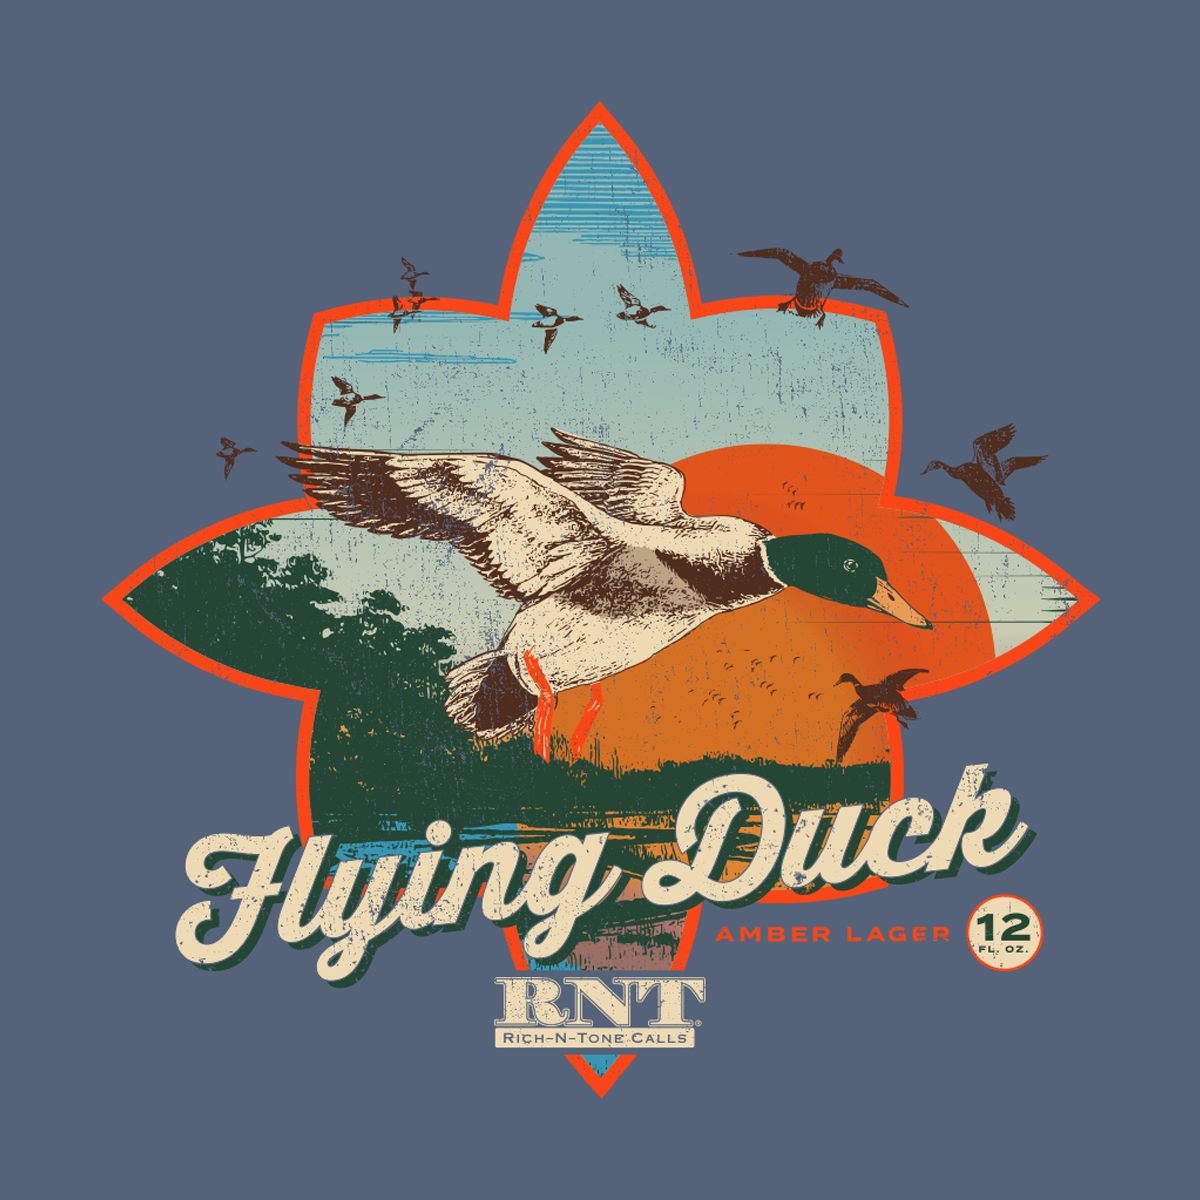 Flying Duck Beer